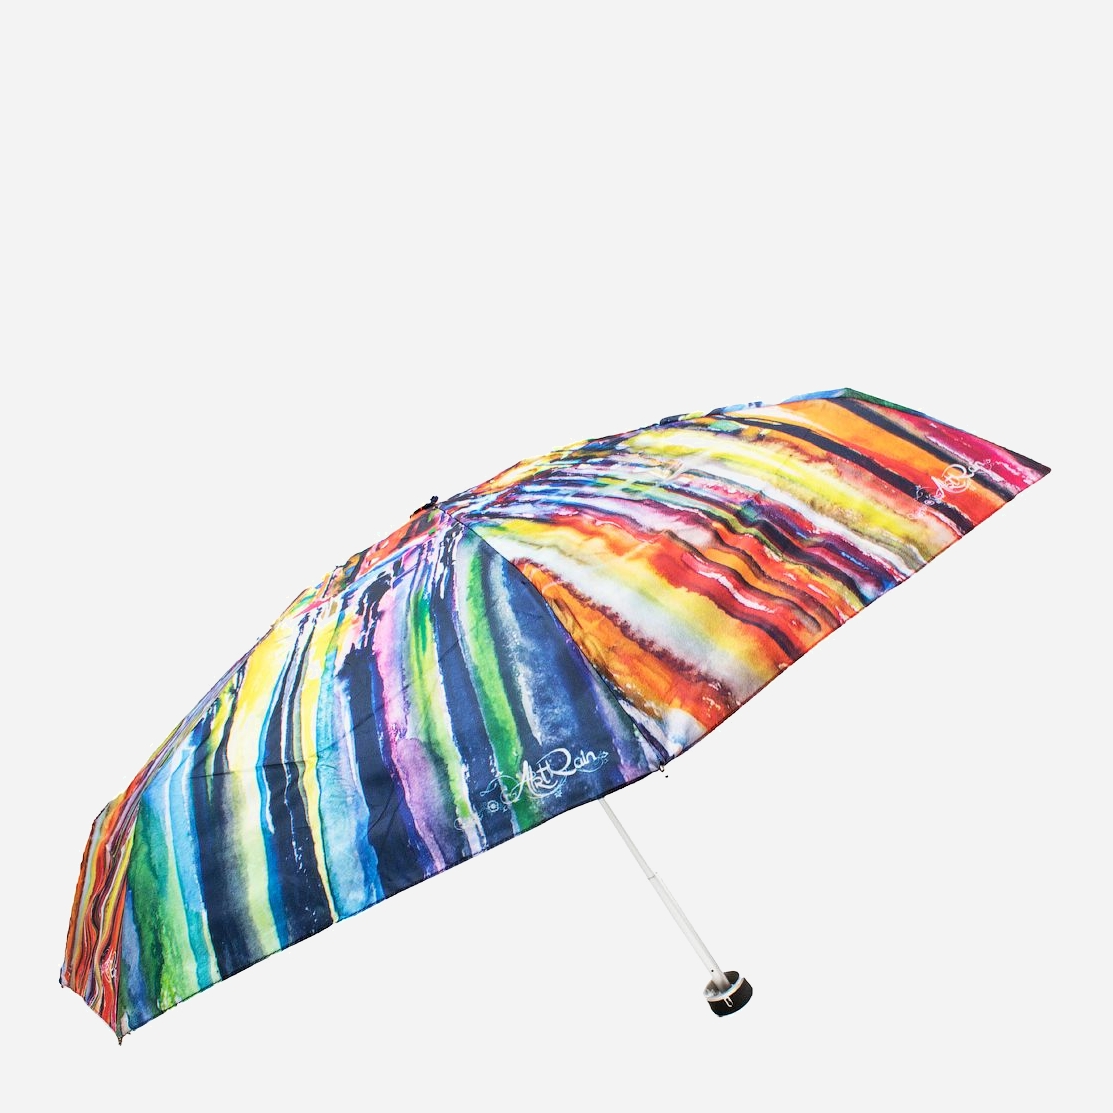 

Зонт cкладной ArtRain ZAR5325-2037 механический Разноцветный